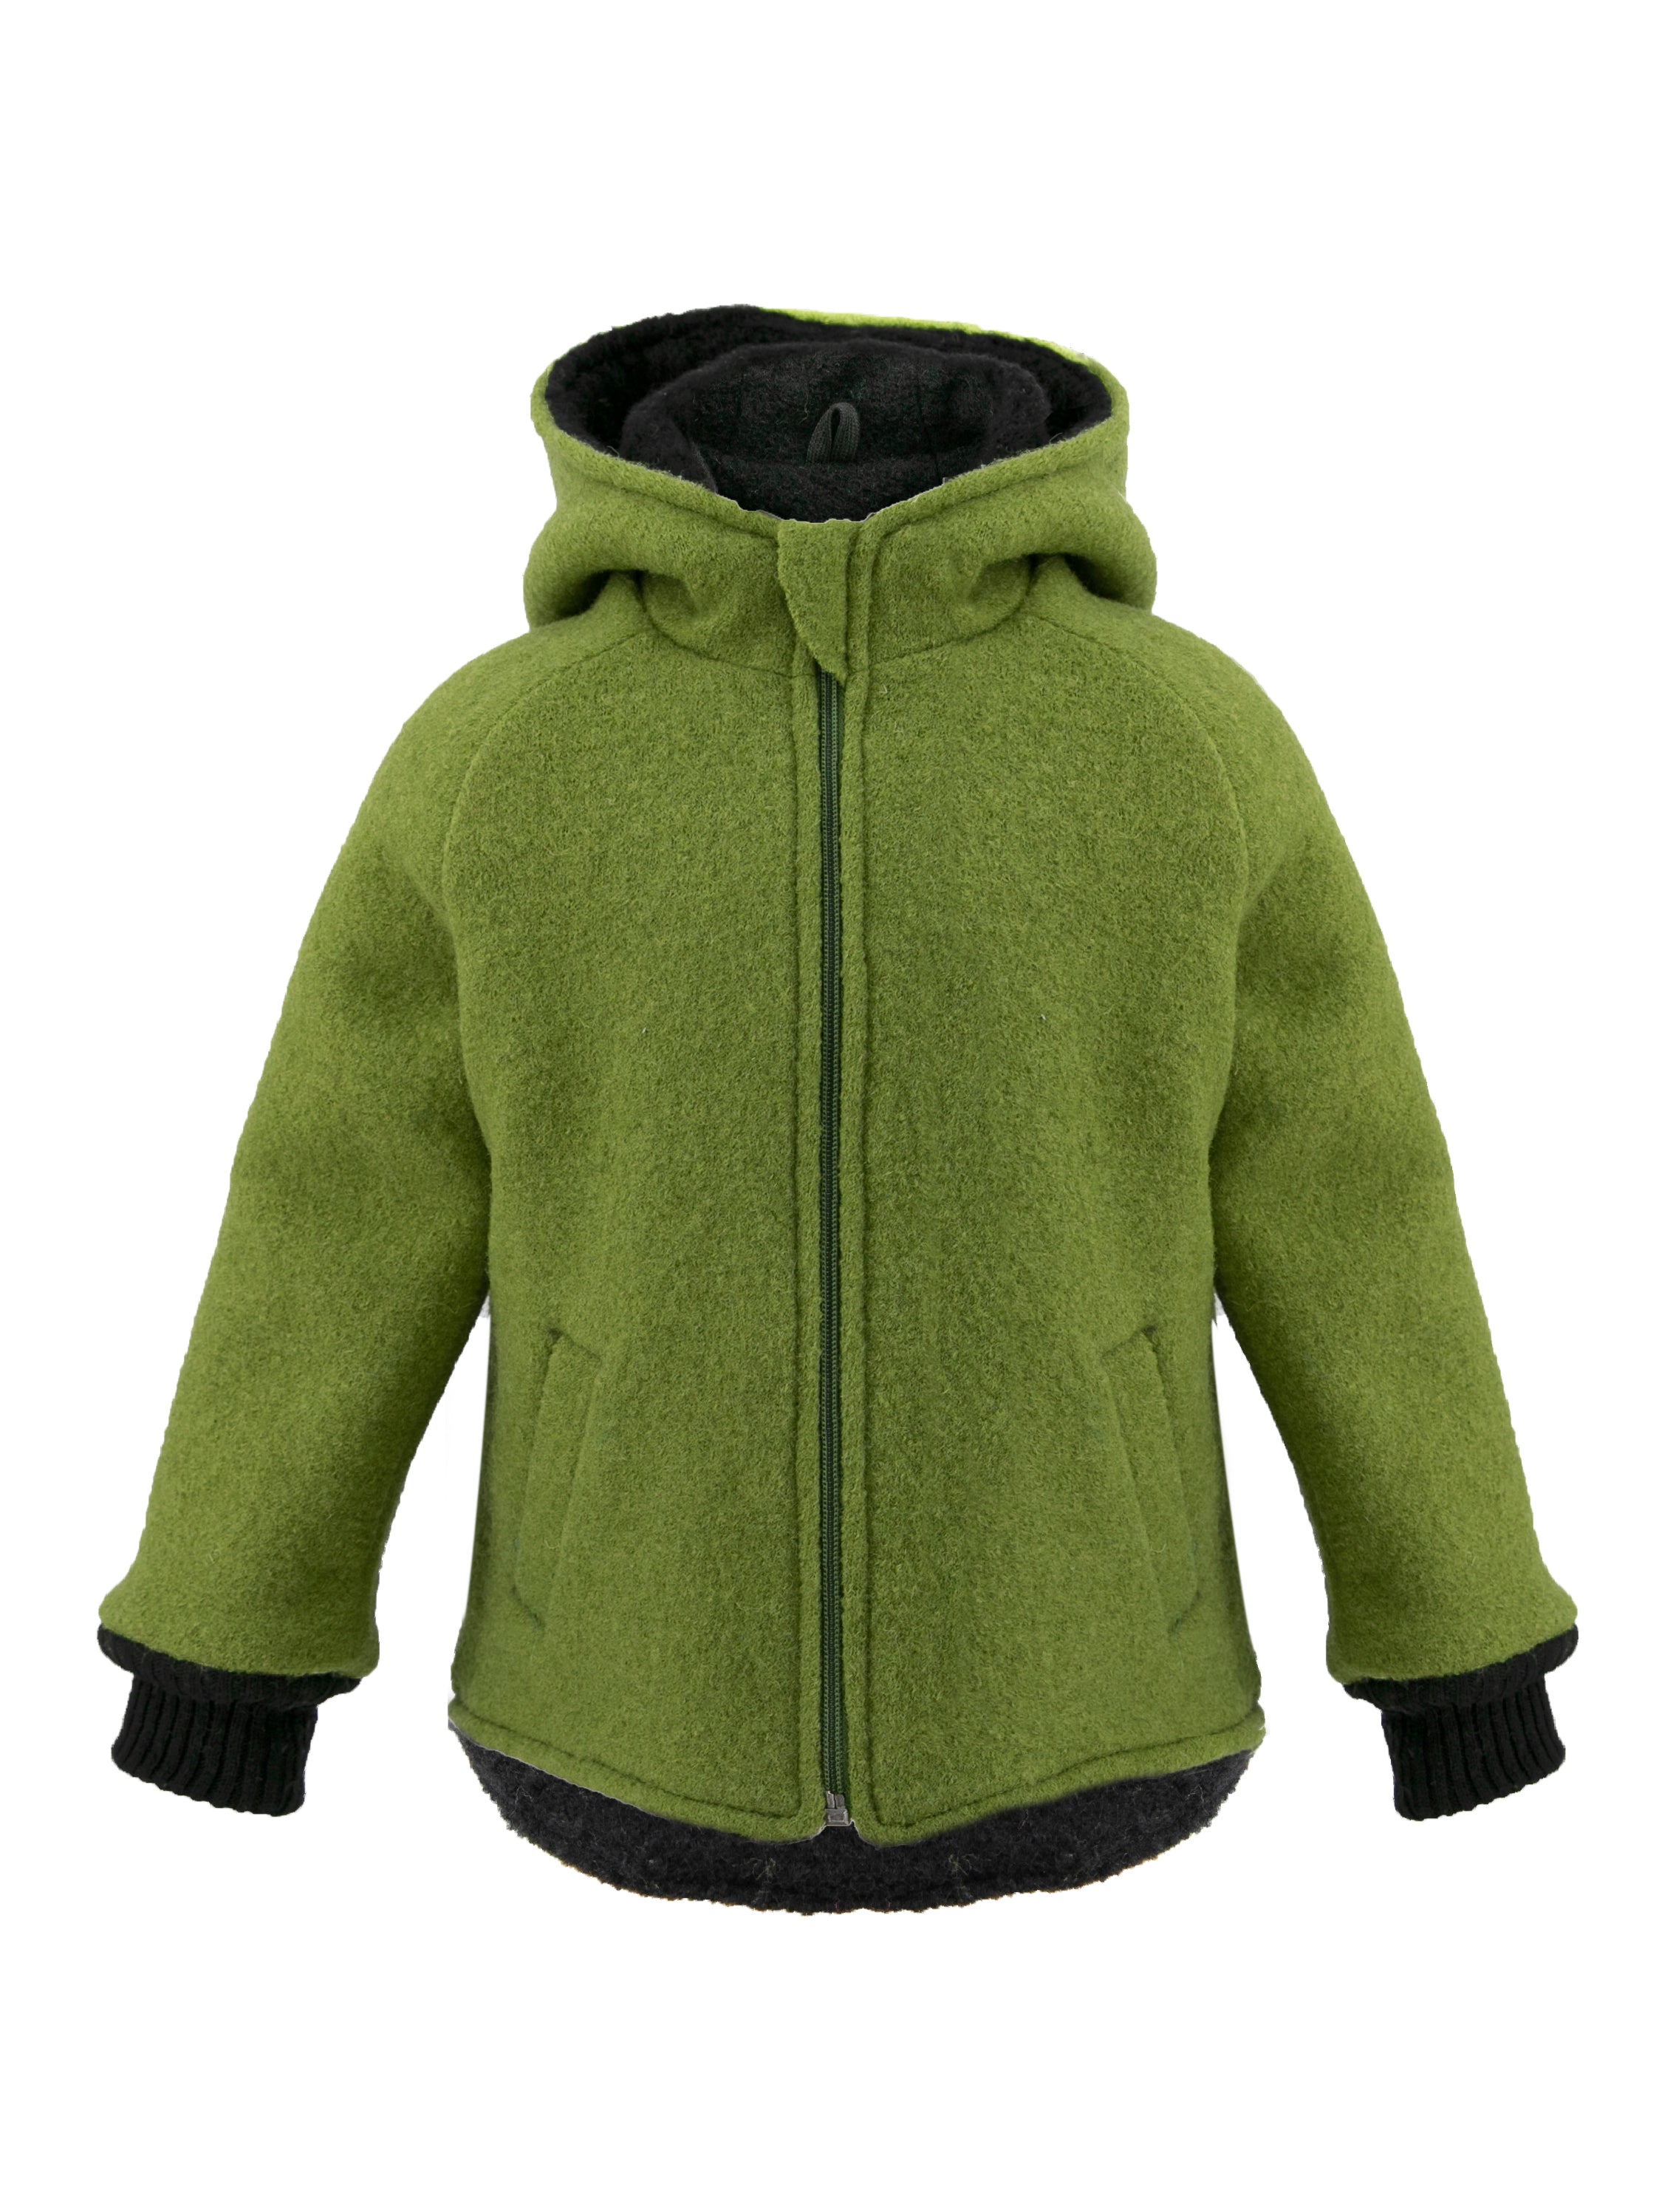 Jacheta dublata din lana fiarta, Green